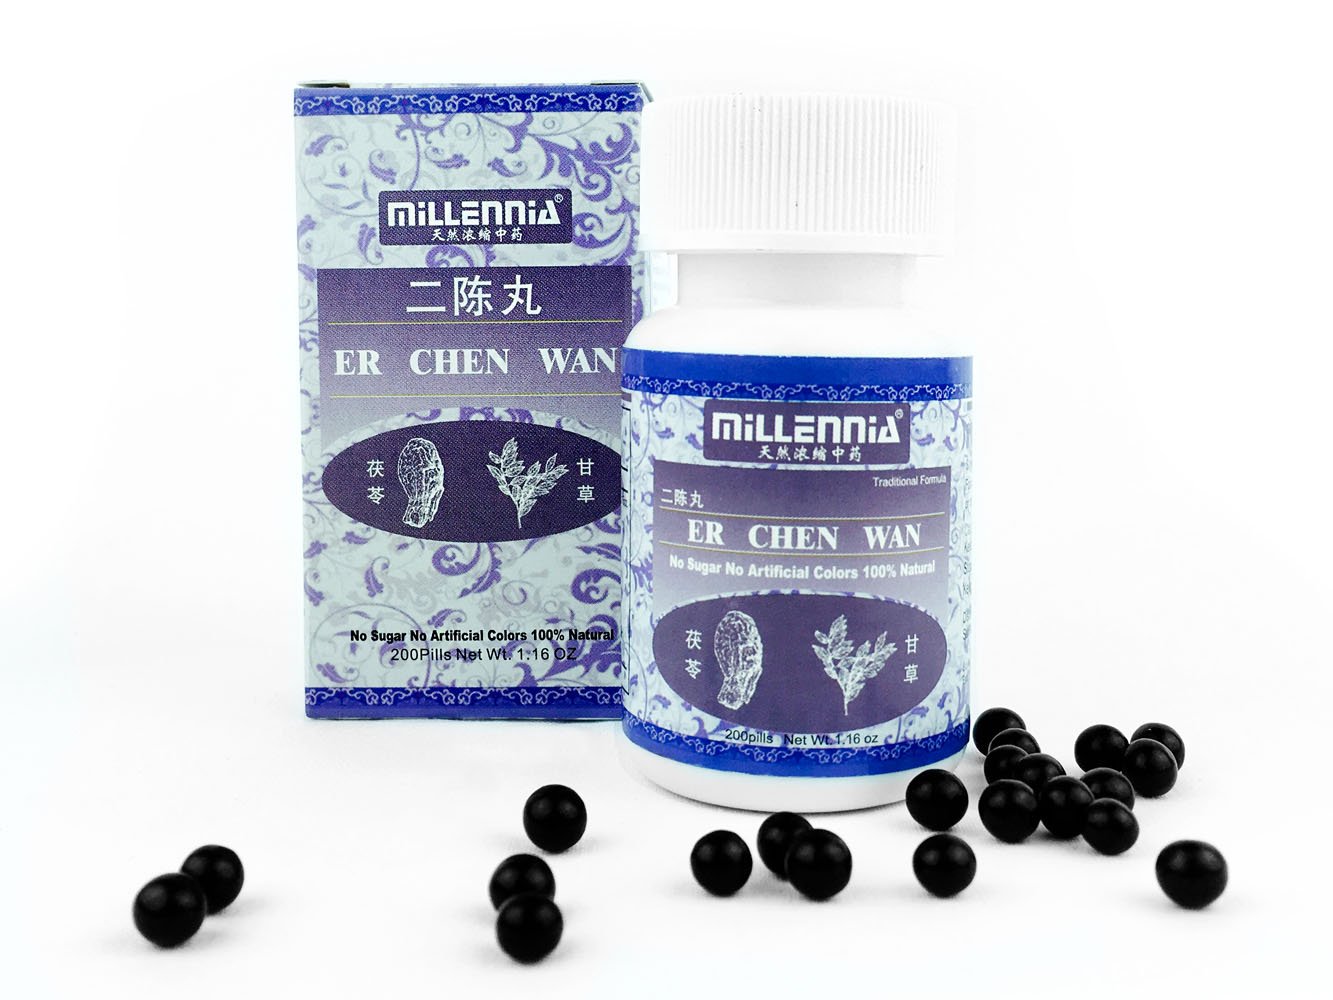 Millennia Herbal Supplement Pills - Er Chen Wan - 12 Bottle Pack (200 Pills/Bottle)